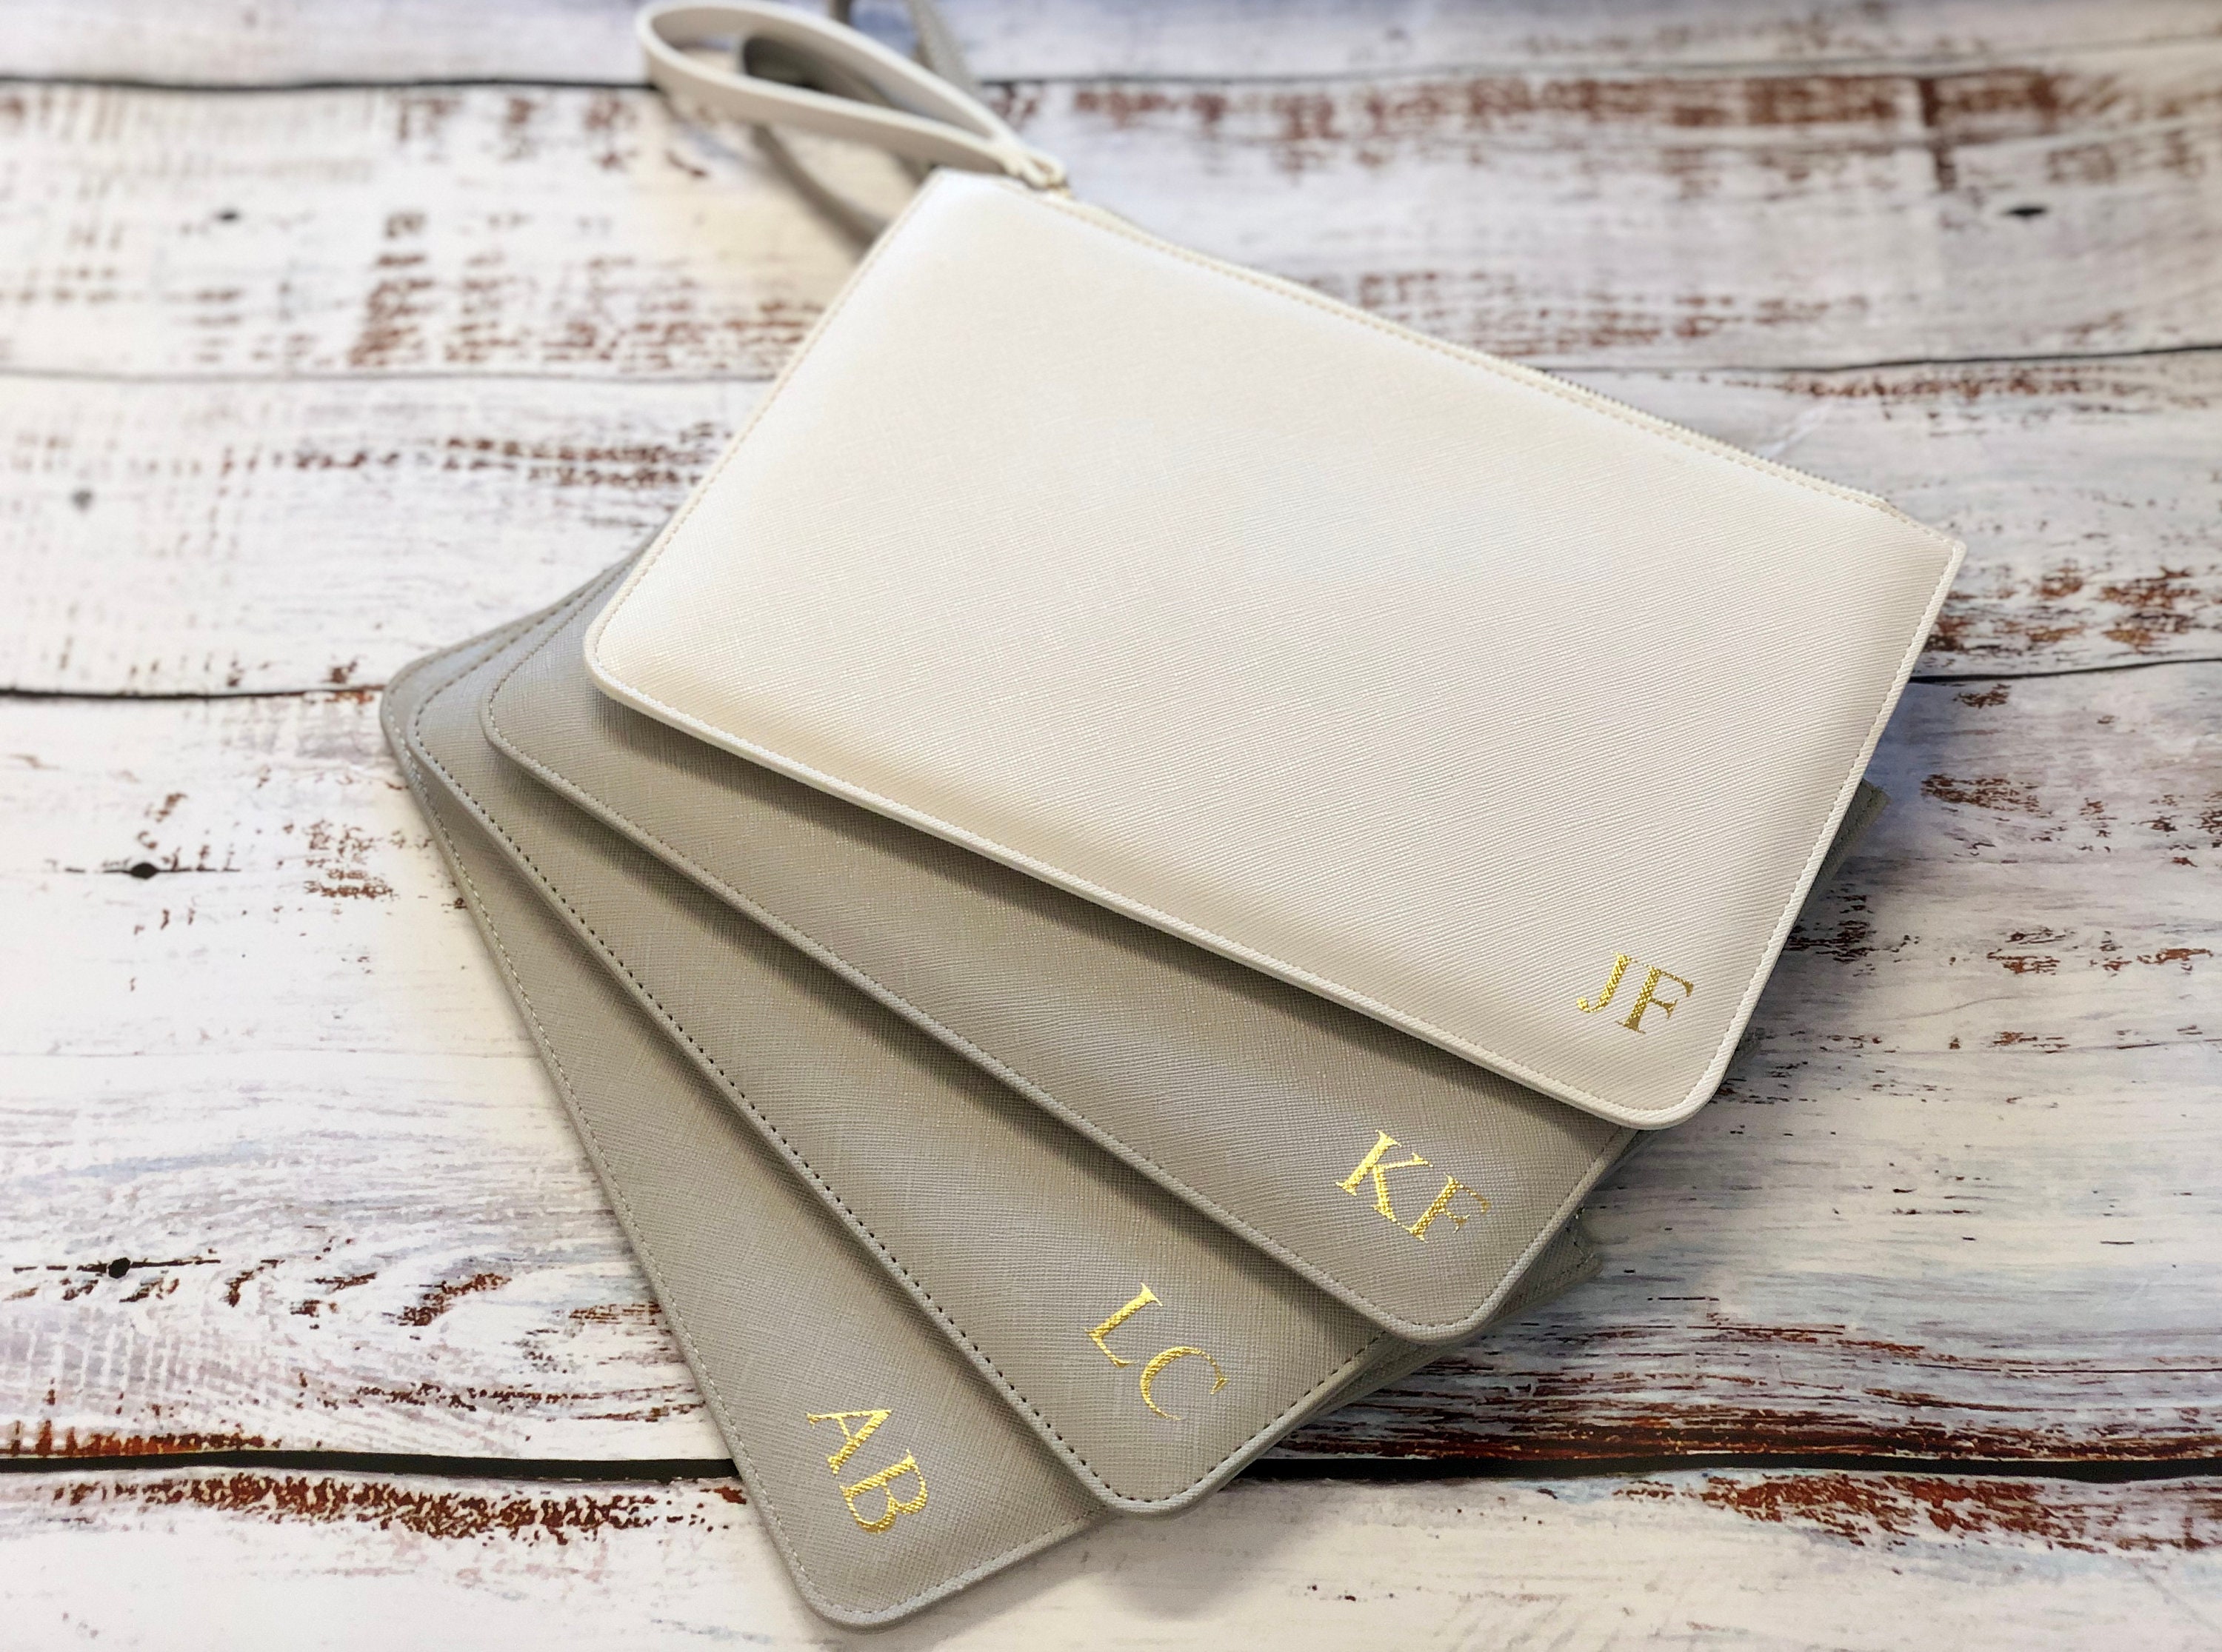 Lot 154 - Louis Vuitton Monogram Compact Zippy Wallet